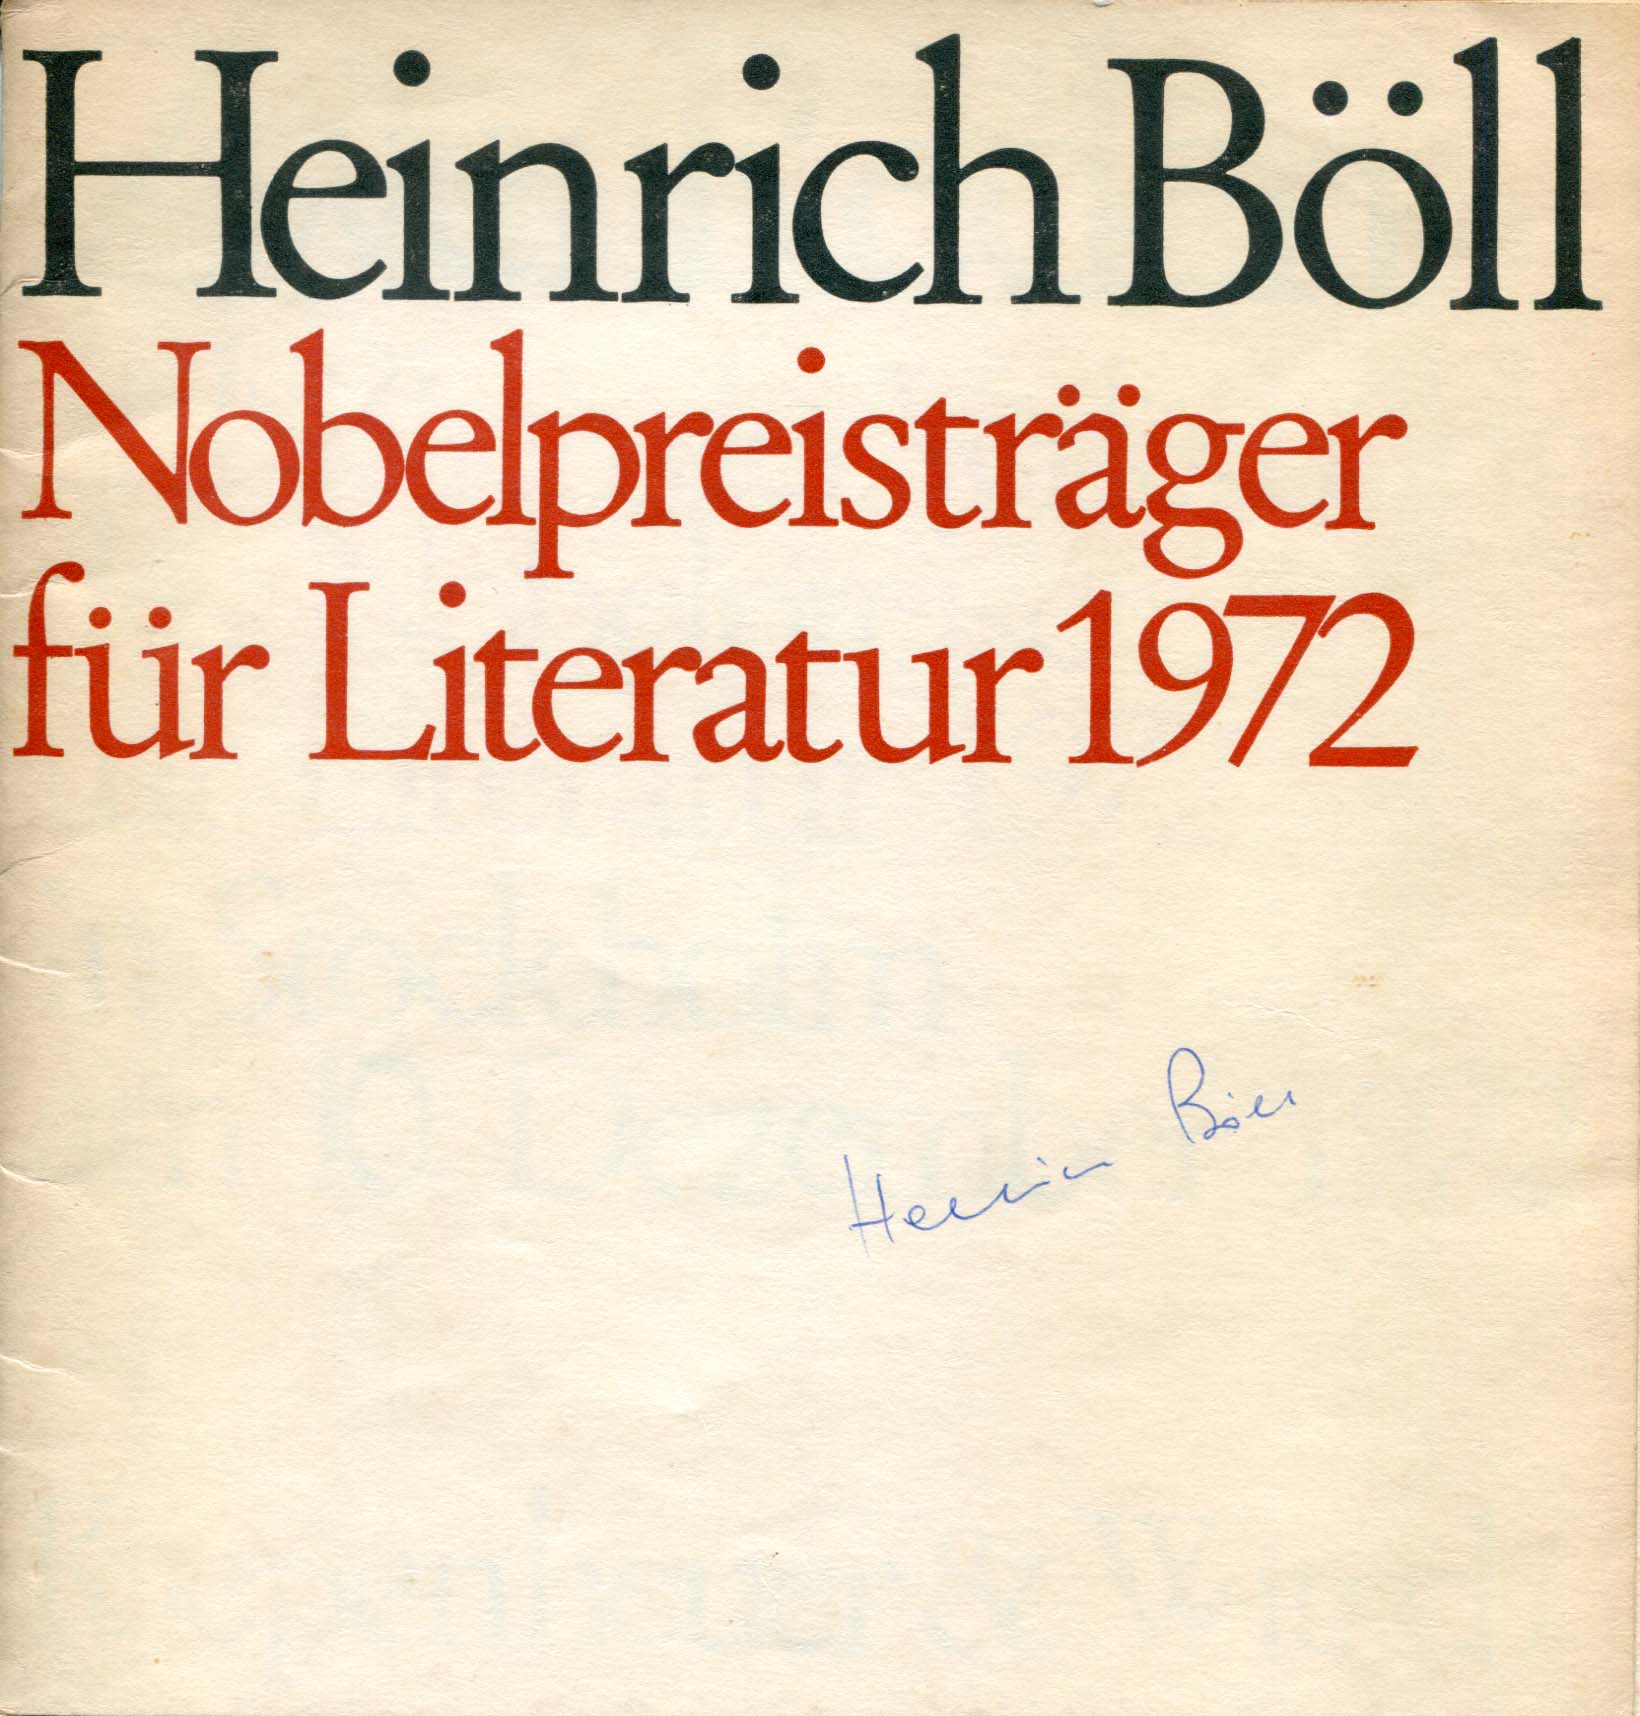 Heinrich Böll Autograph Autogramm | ID 7079584301205